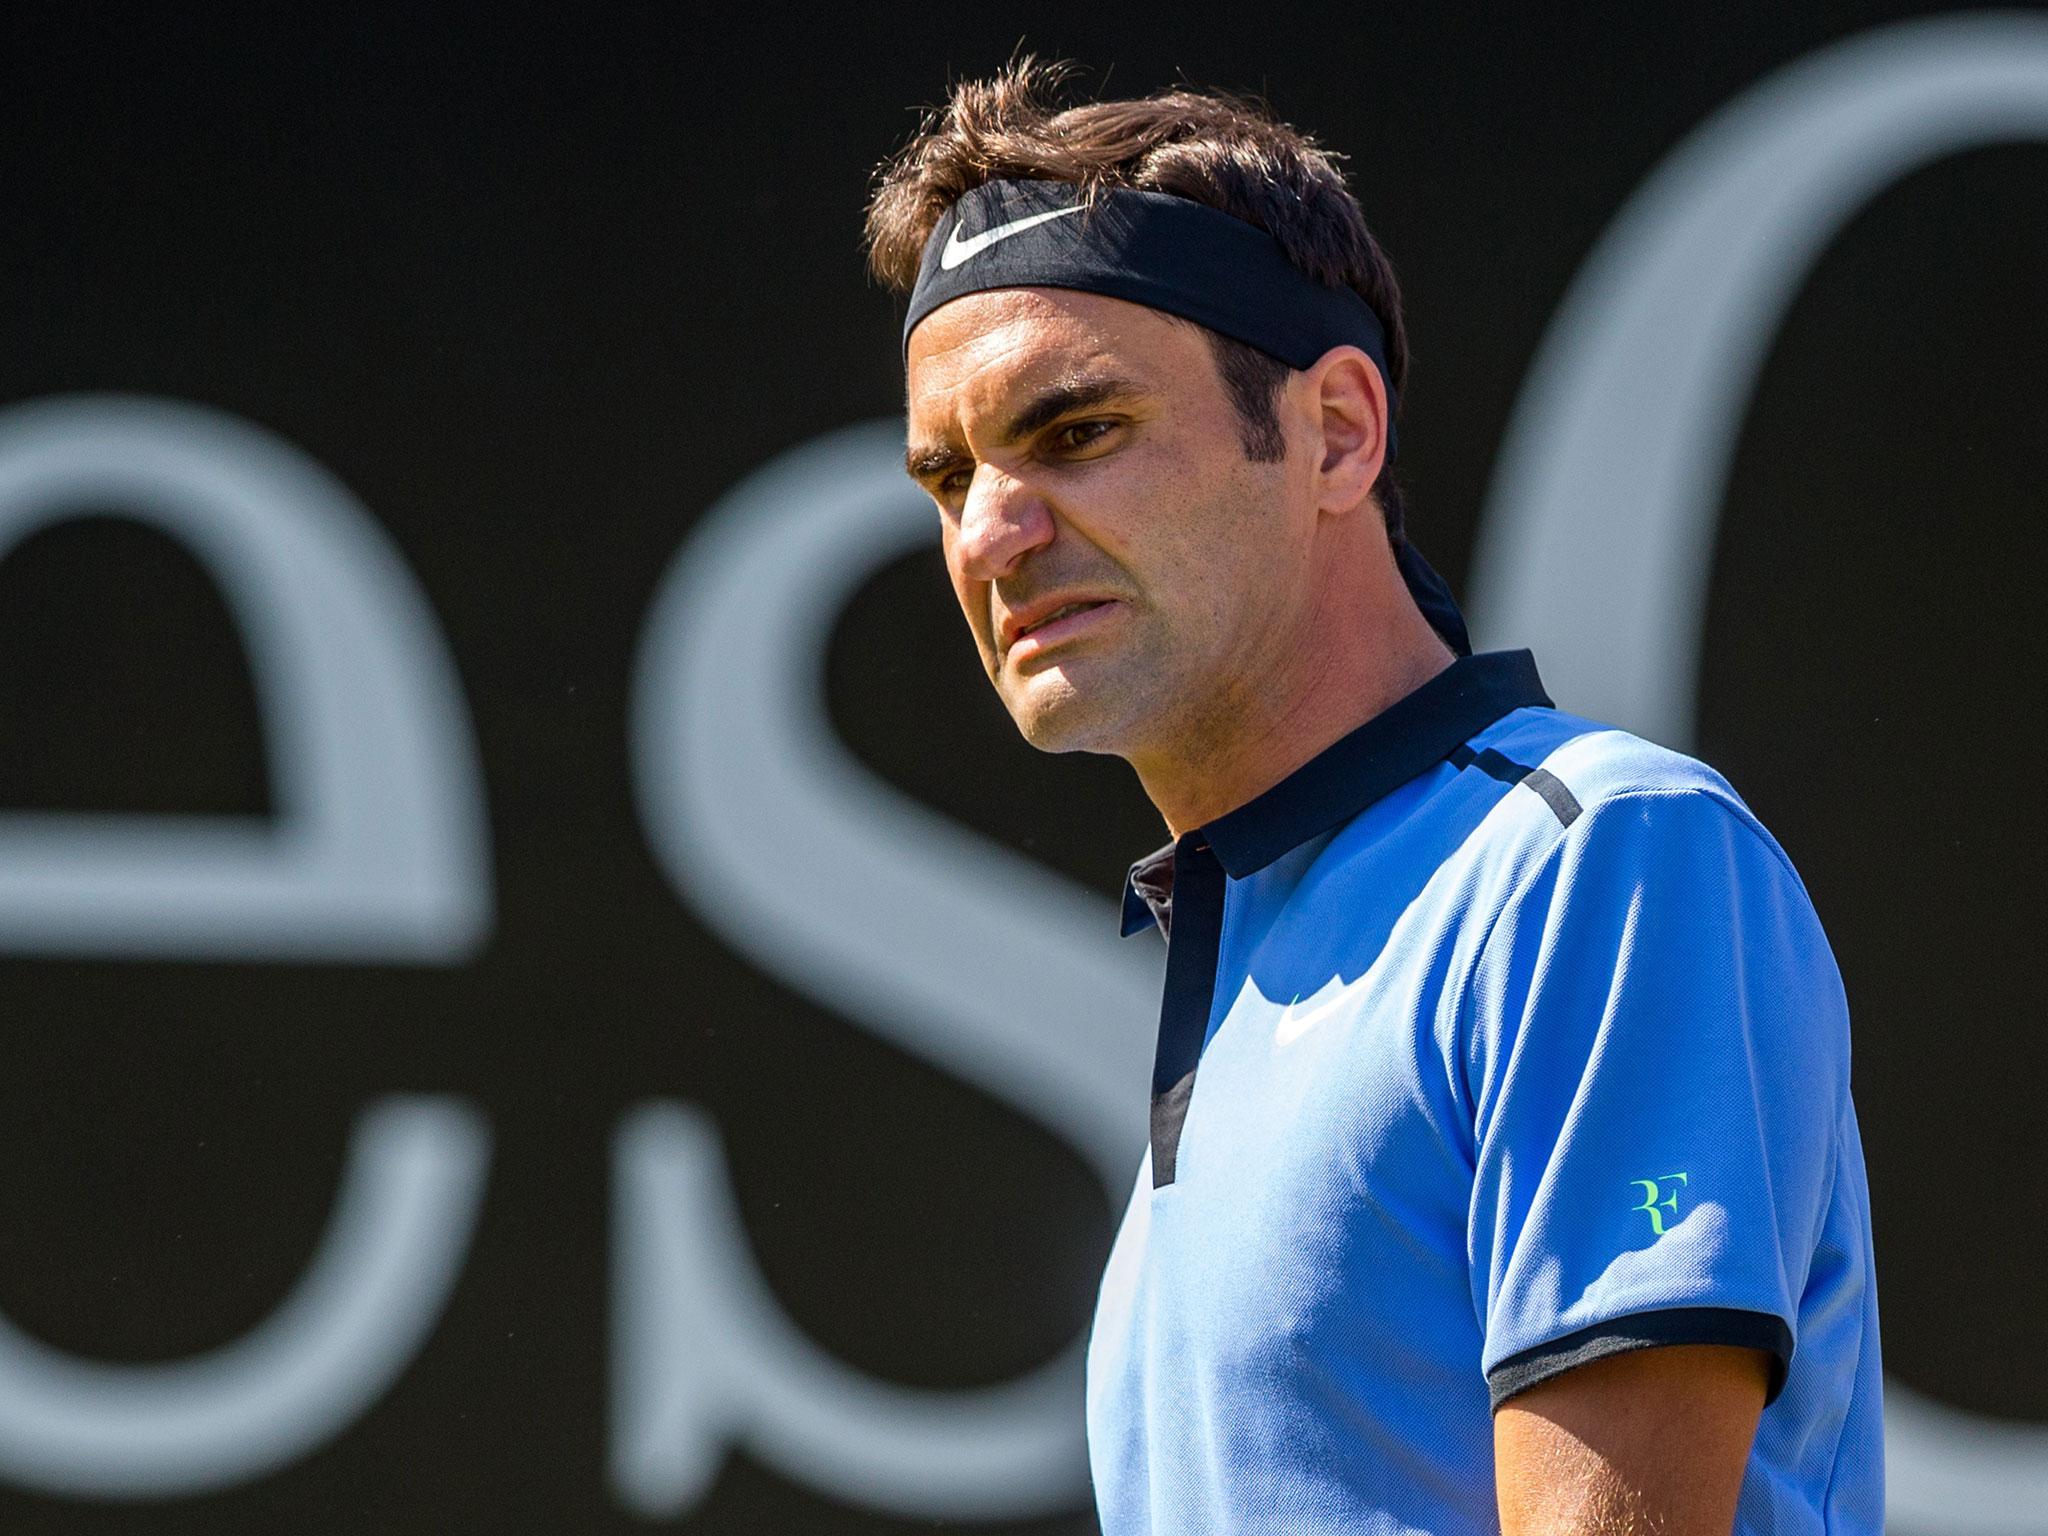 Roger Federer is keen to get back on track in Halle